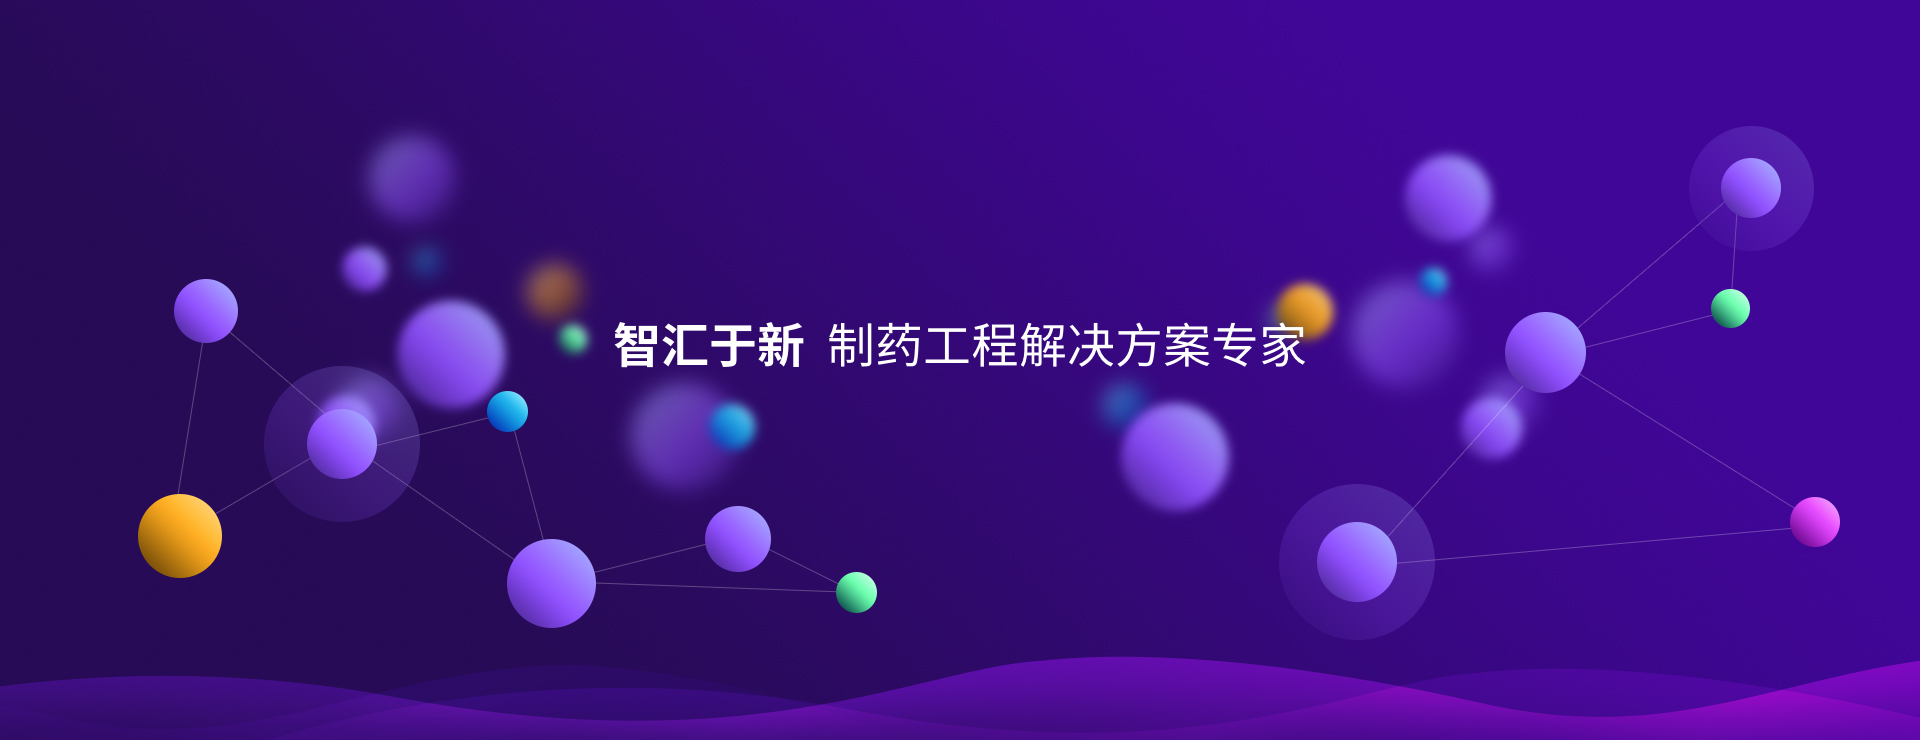 关于当前产品1155官方网站·(中国)官方网站的成功案例等相关图片